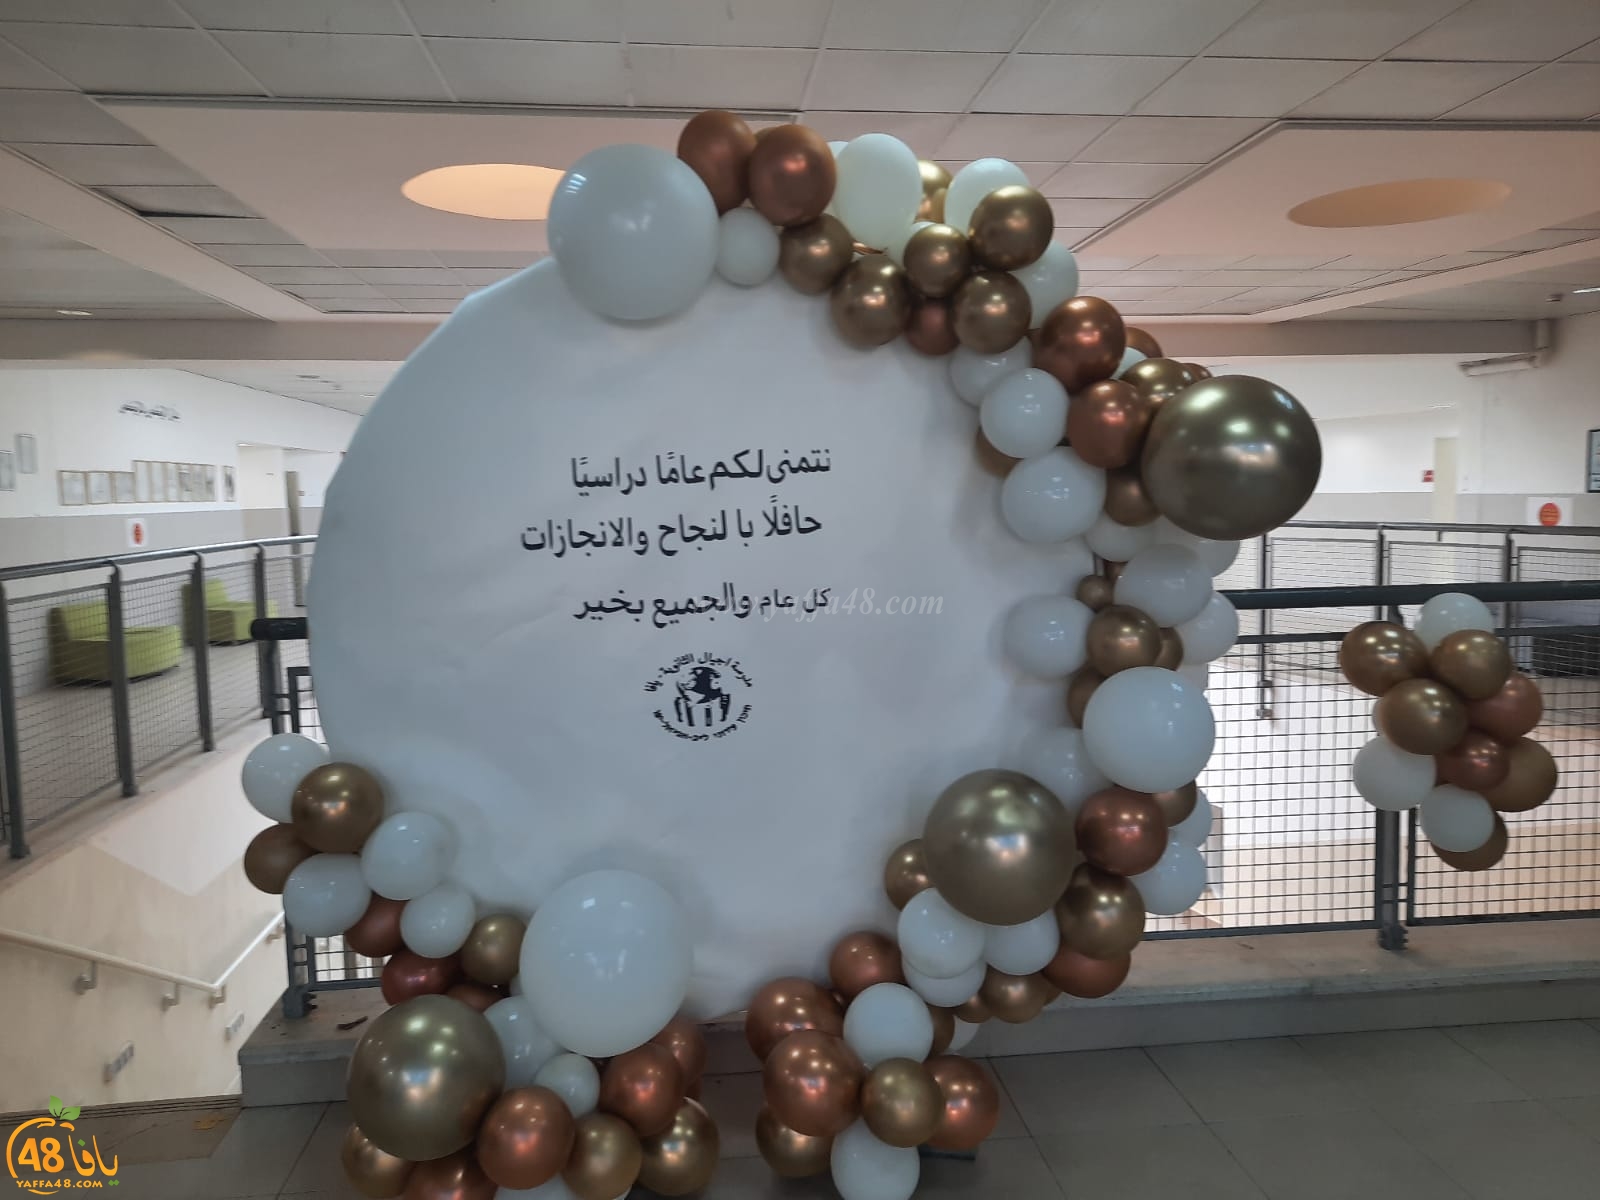 مزيد من الصور لافتتاح العام الدراسي الجديد في مدينة يافا